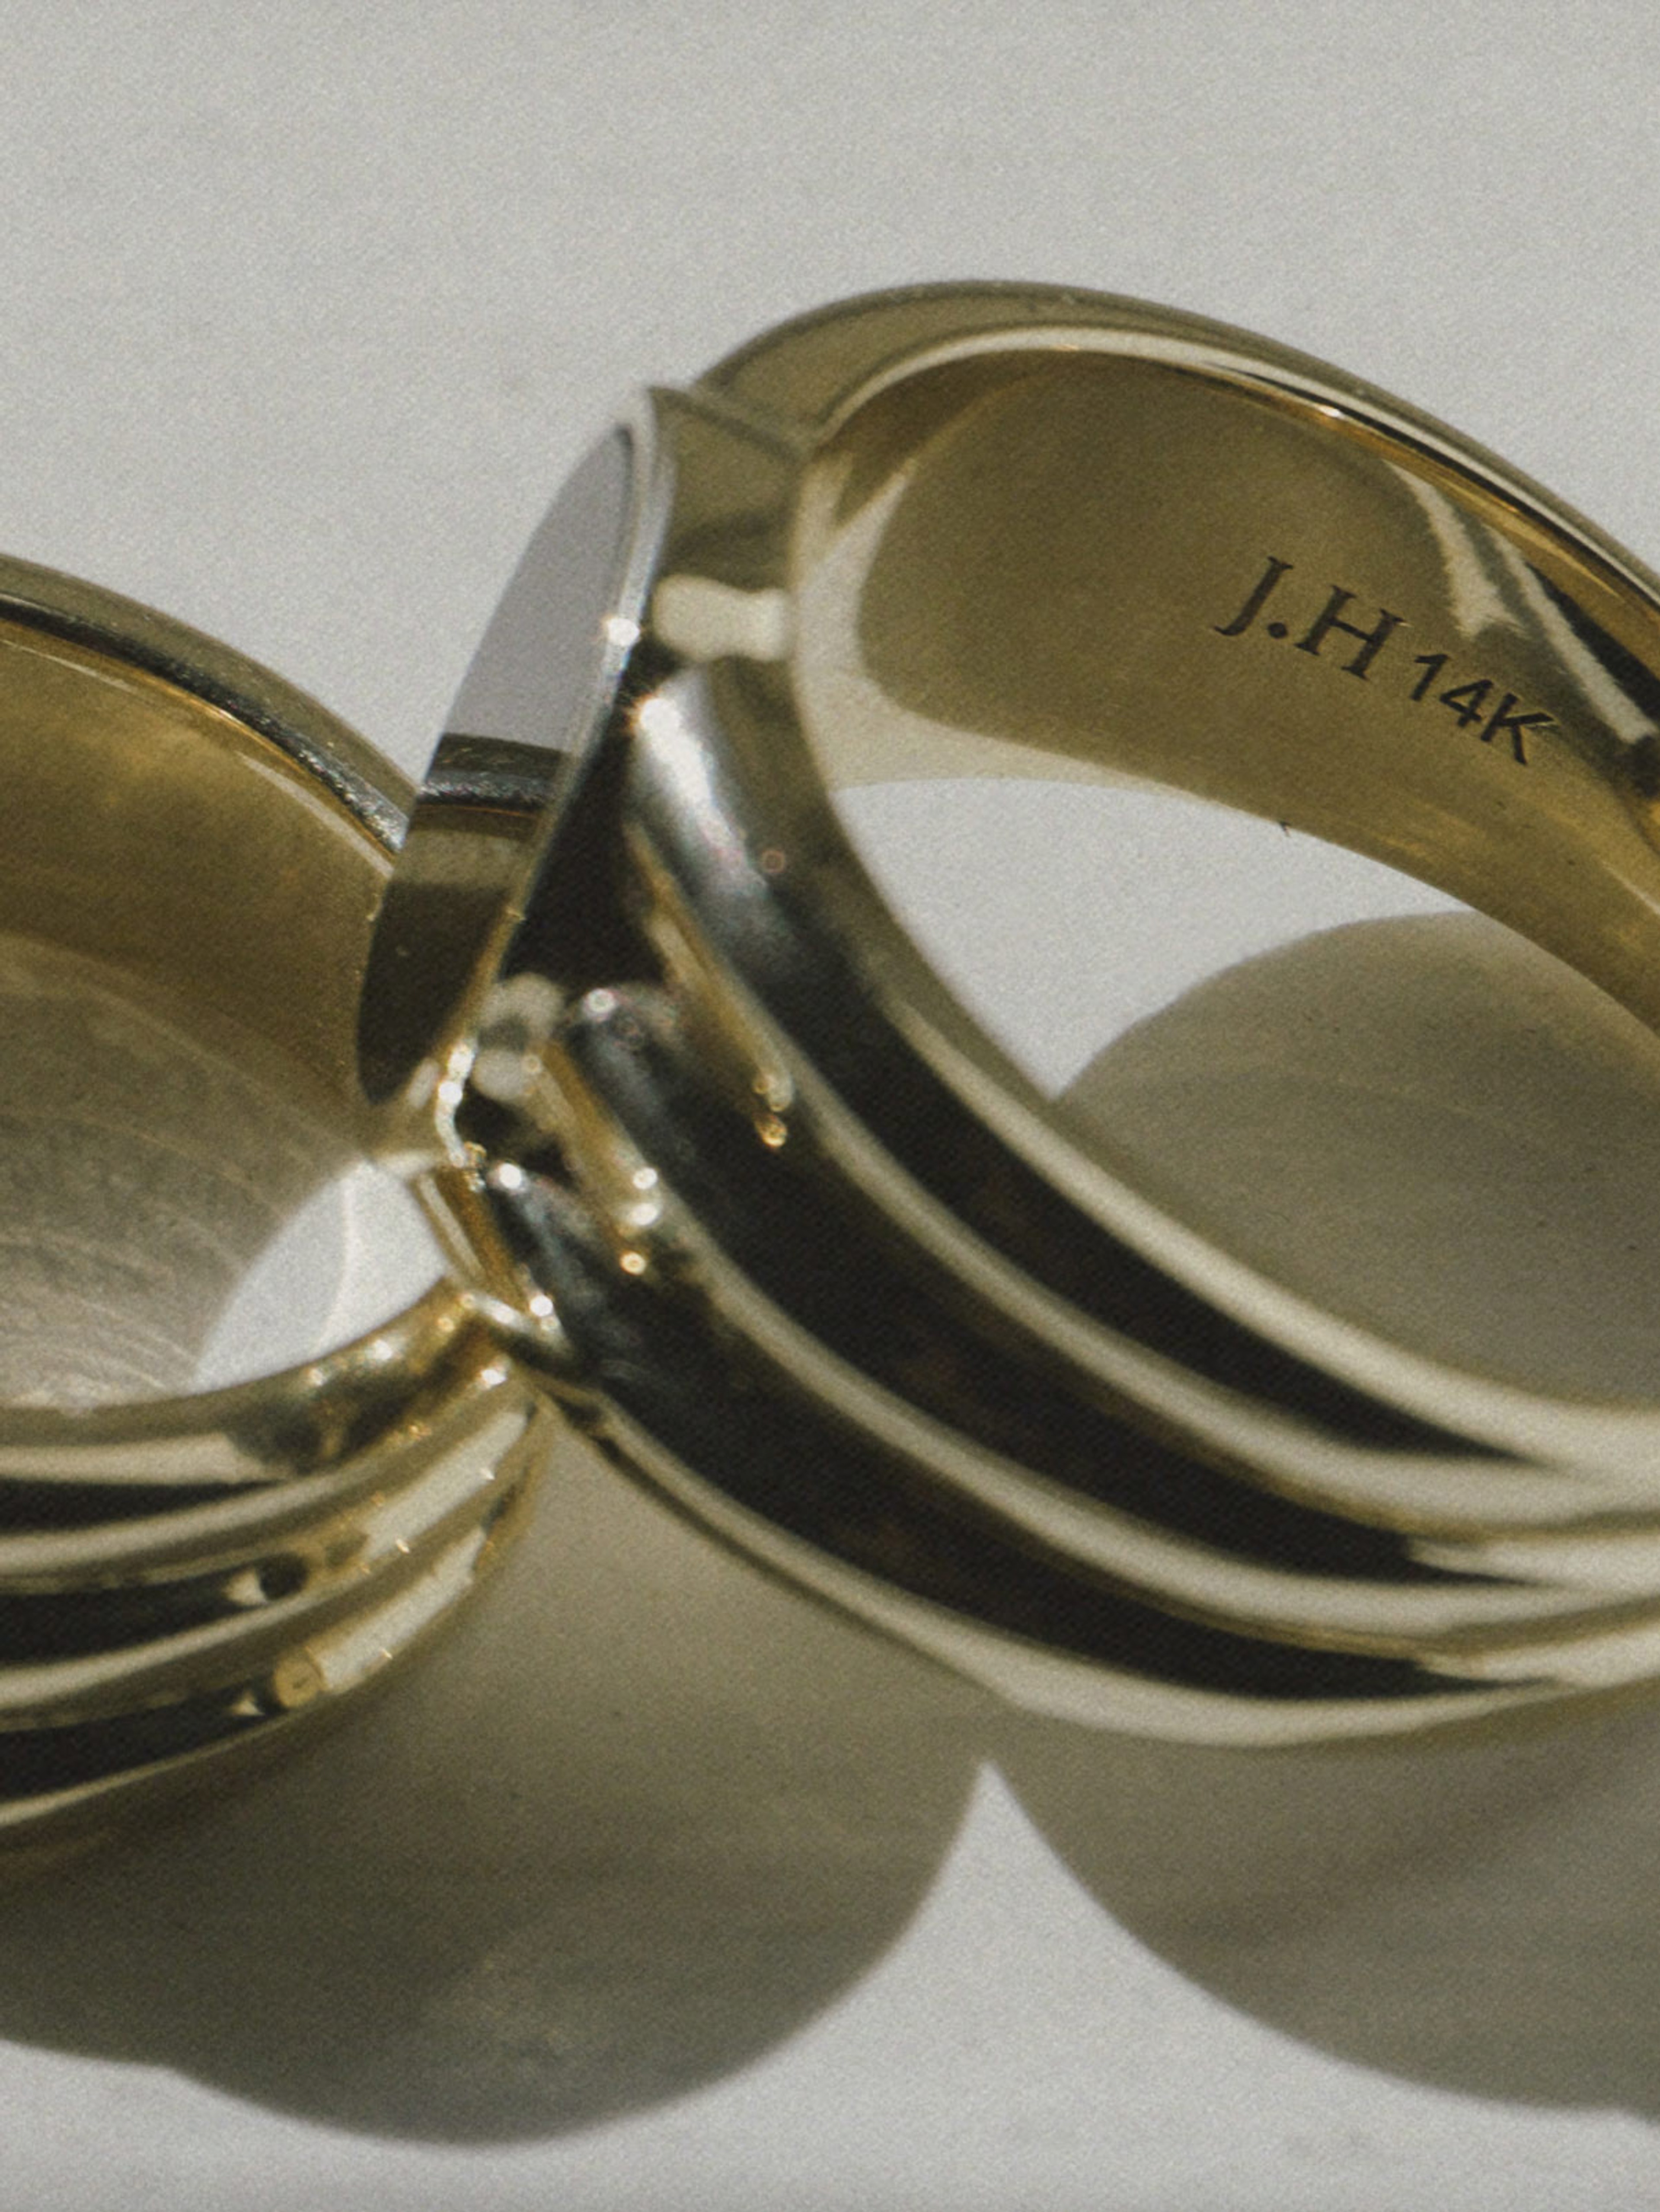 J.Hannah Logo Engraved Inside Ring